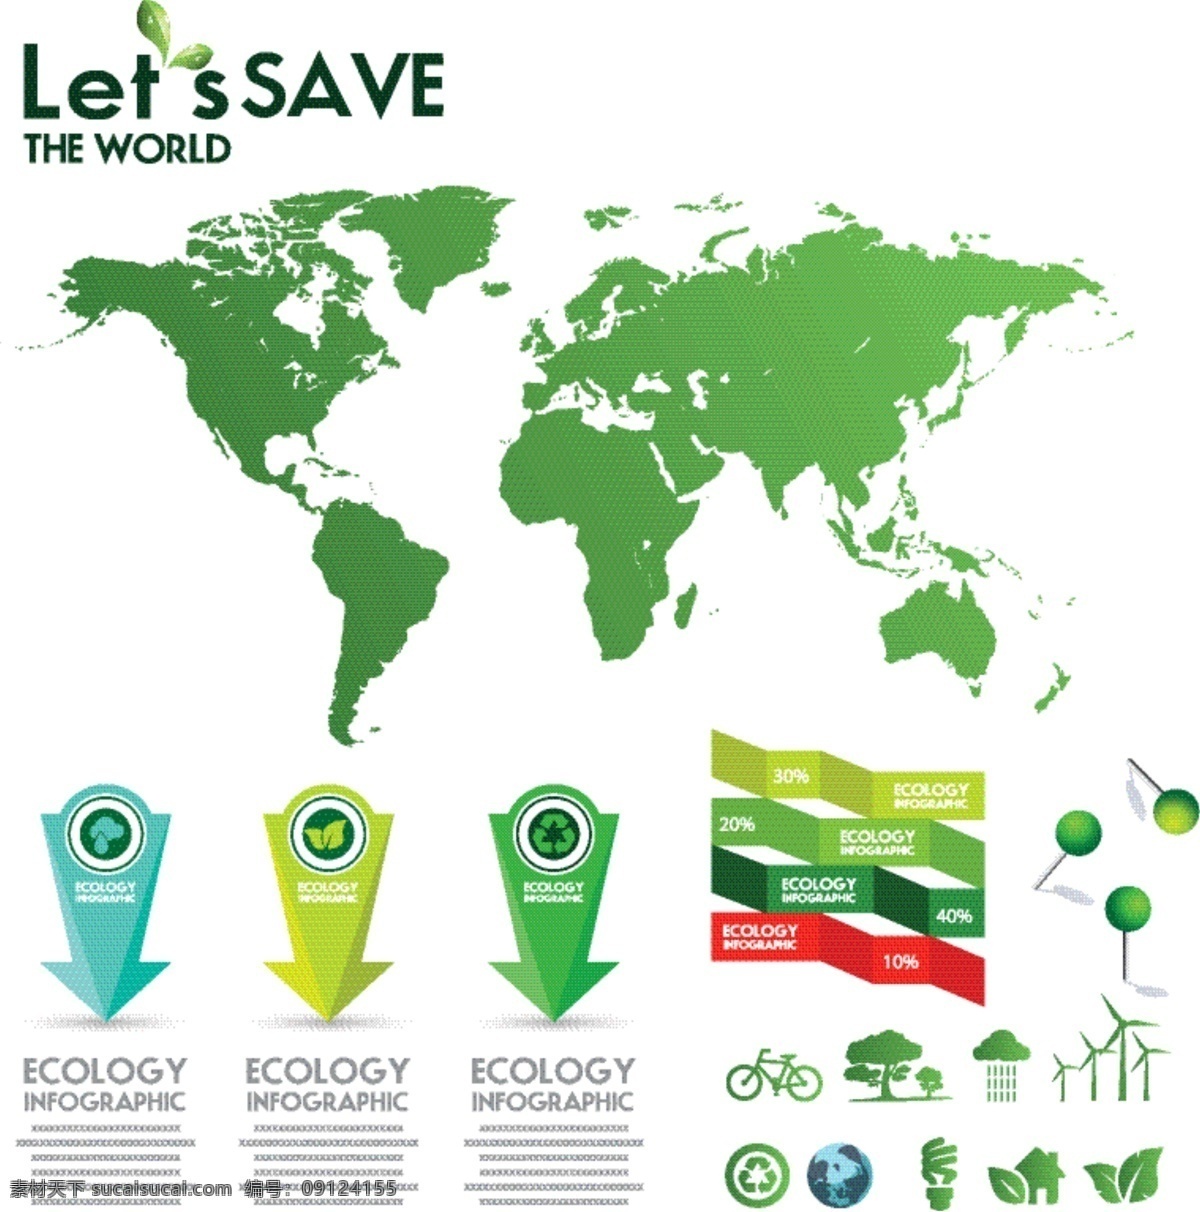 生态信息图表 环保 创意设计 eco 绿色 循环 能源 节能 低碳 生态 回收 环保标志 ppt素材 底纹背景 商务金融 商业插画 白色